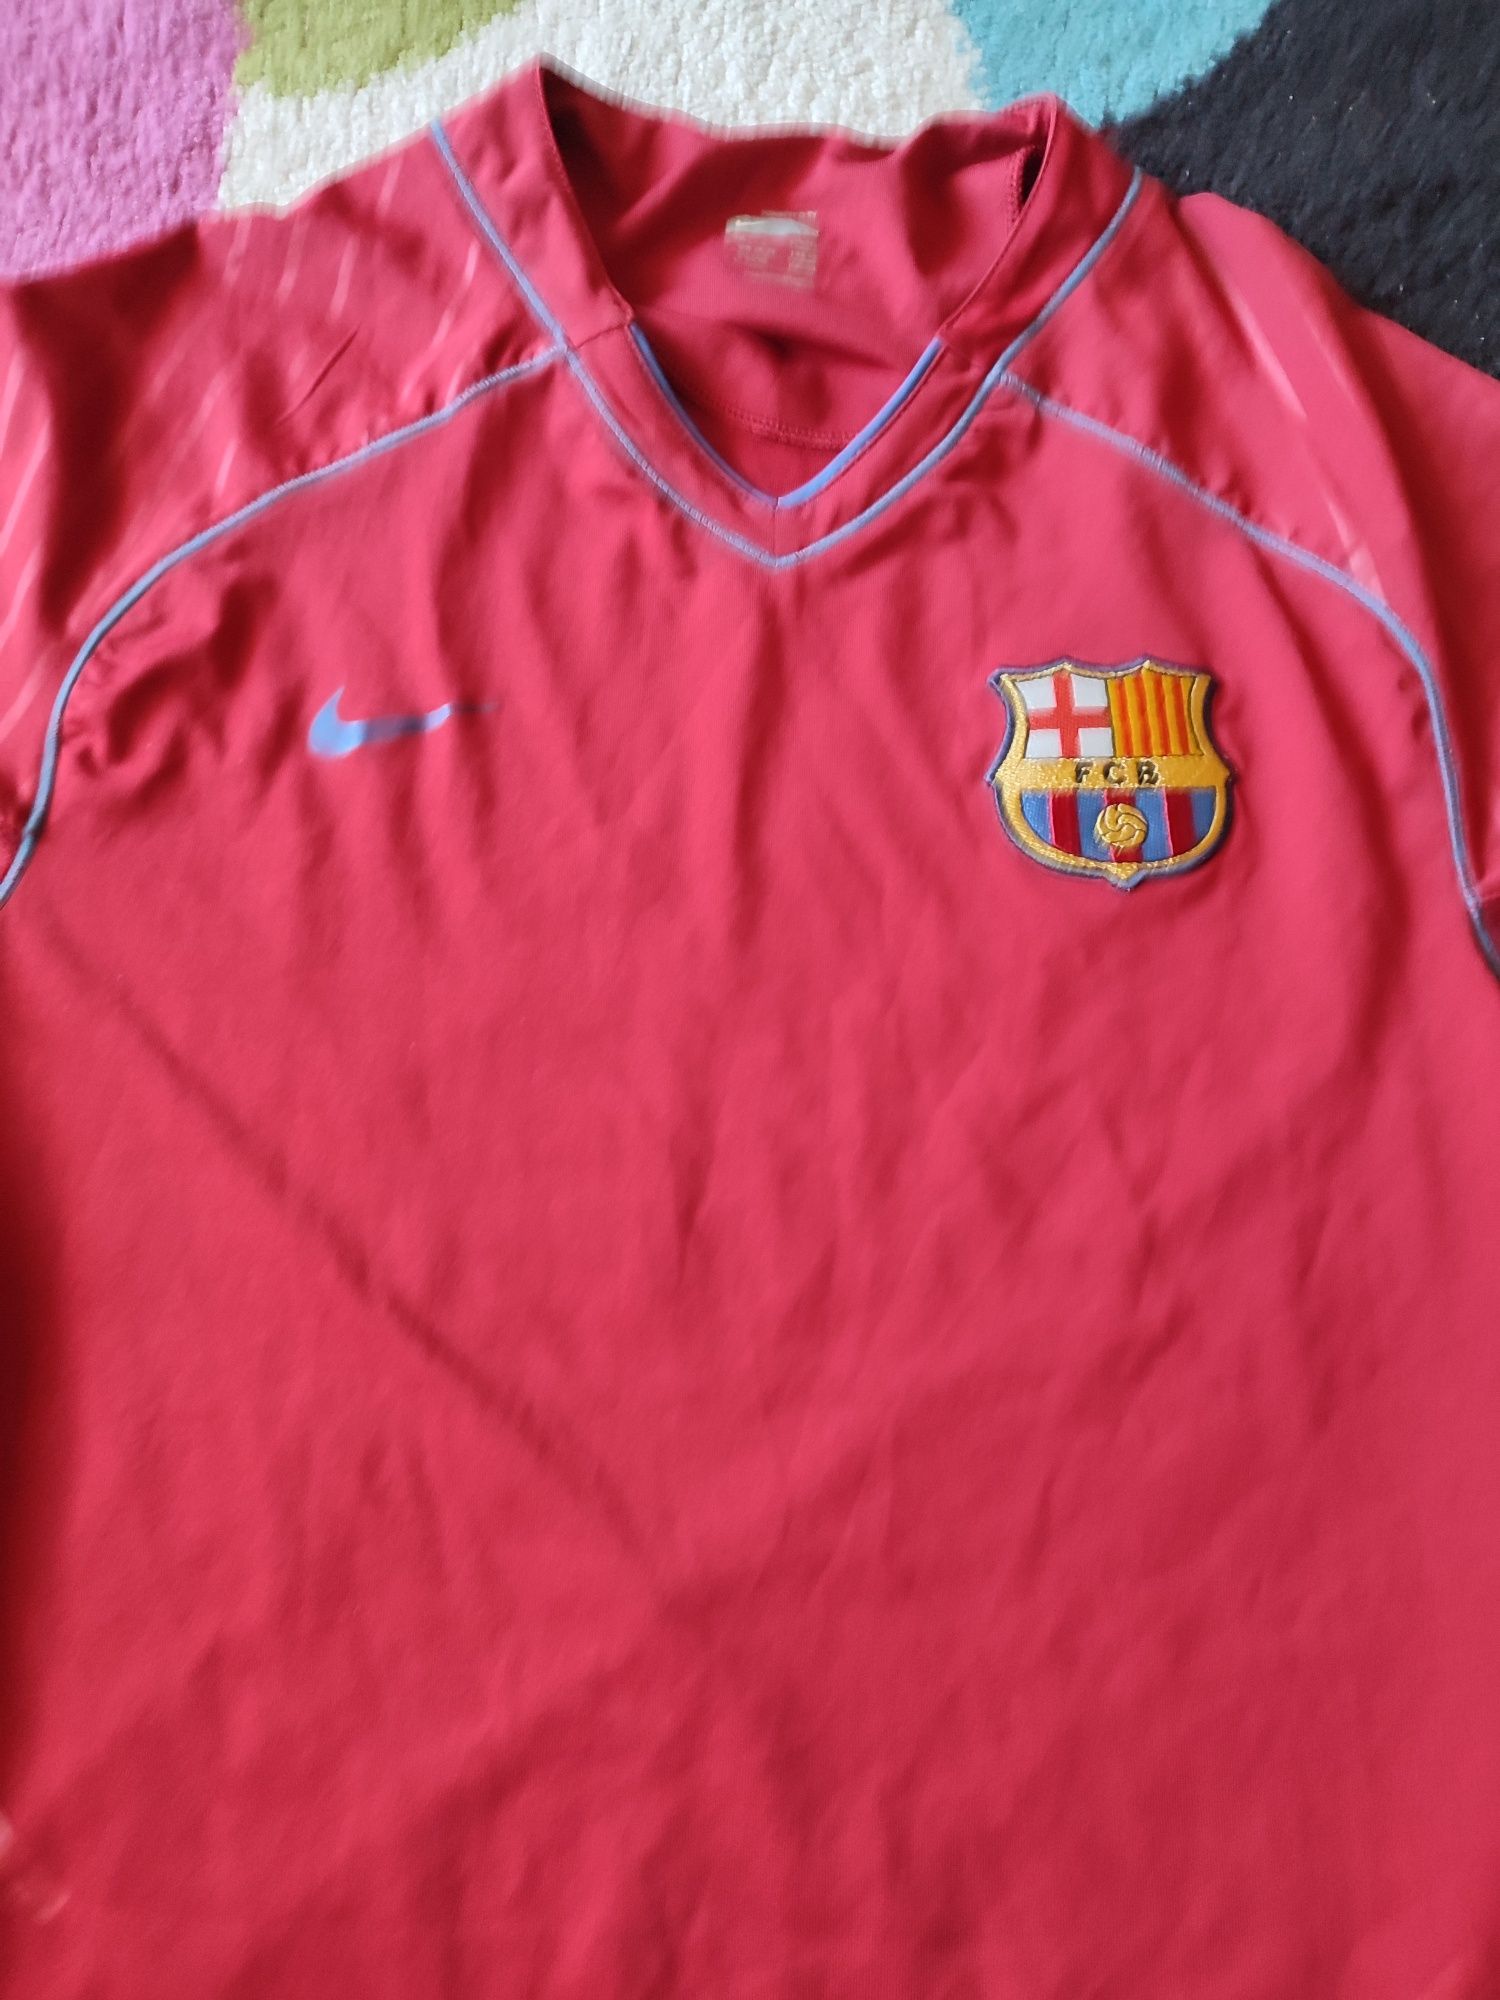 Vând tricou FC Barcelona